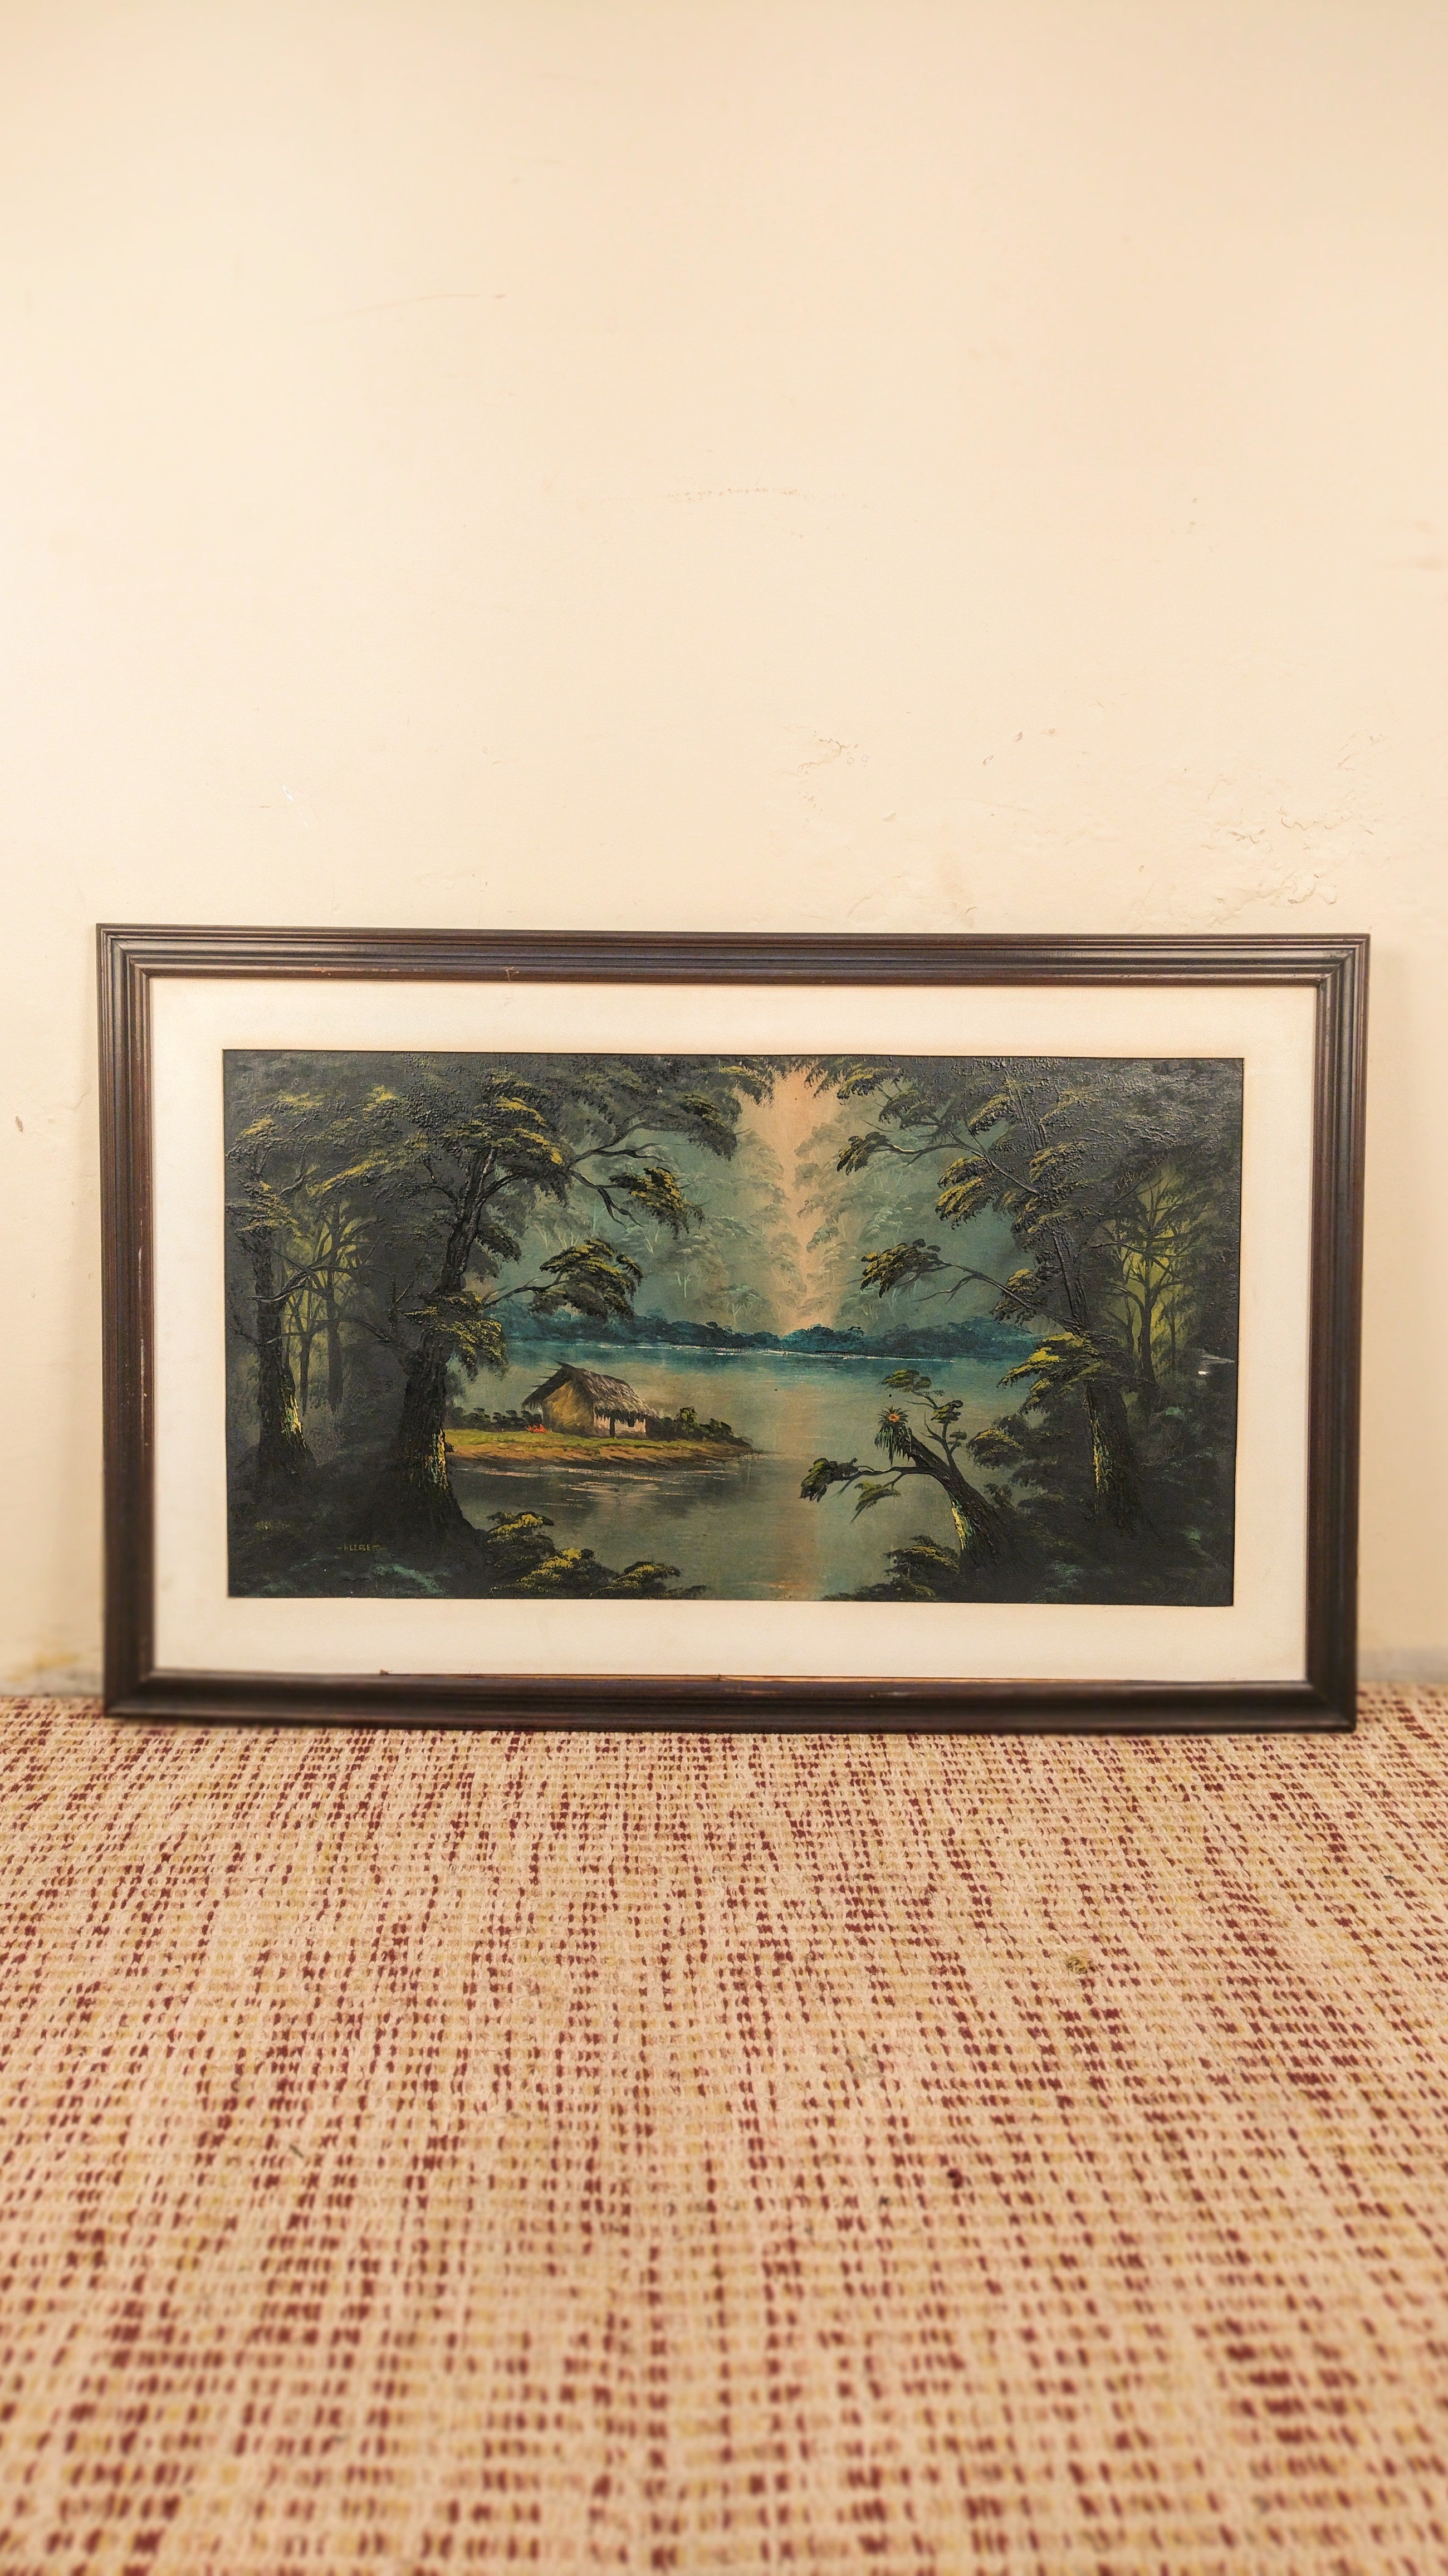 Quadro "O lago" por Kleber (110cm X 70cm)